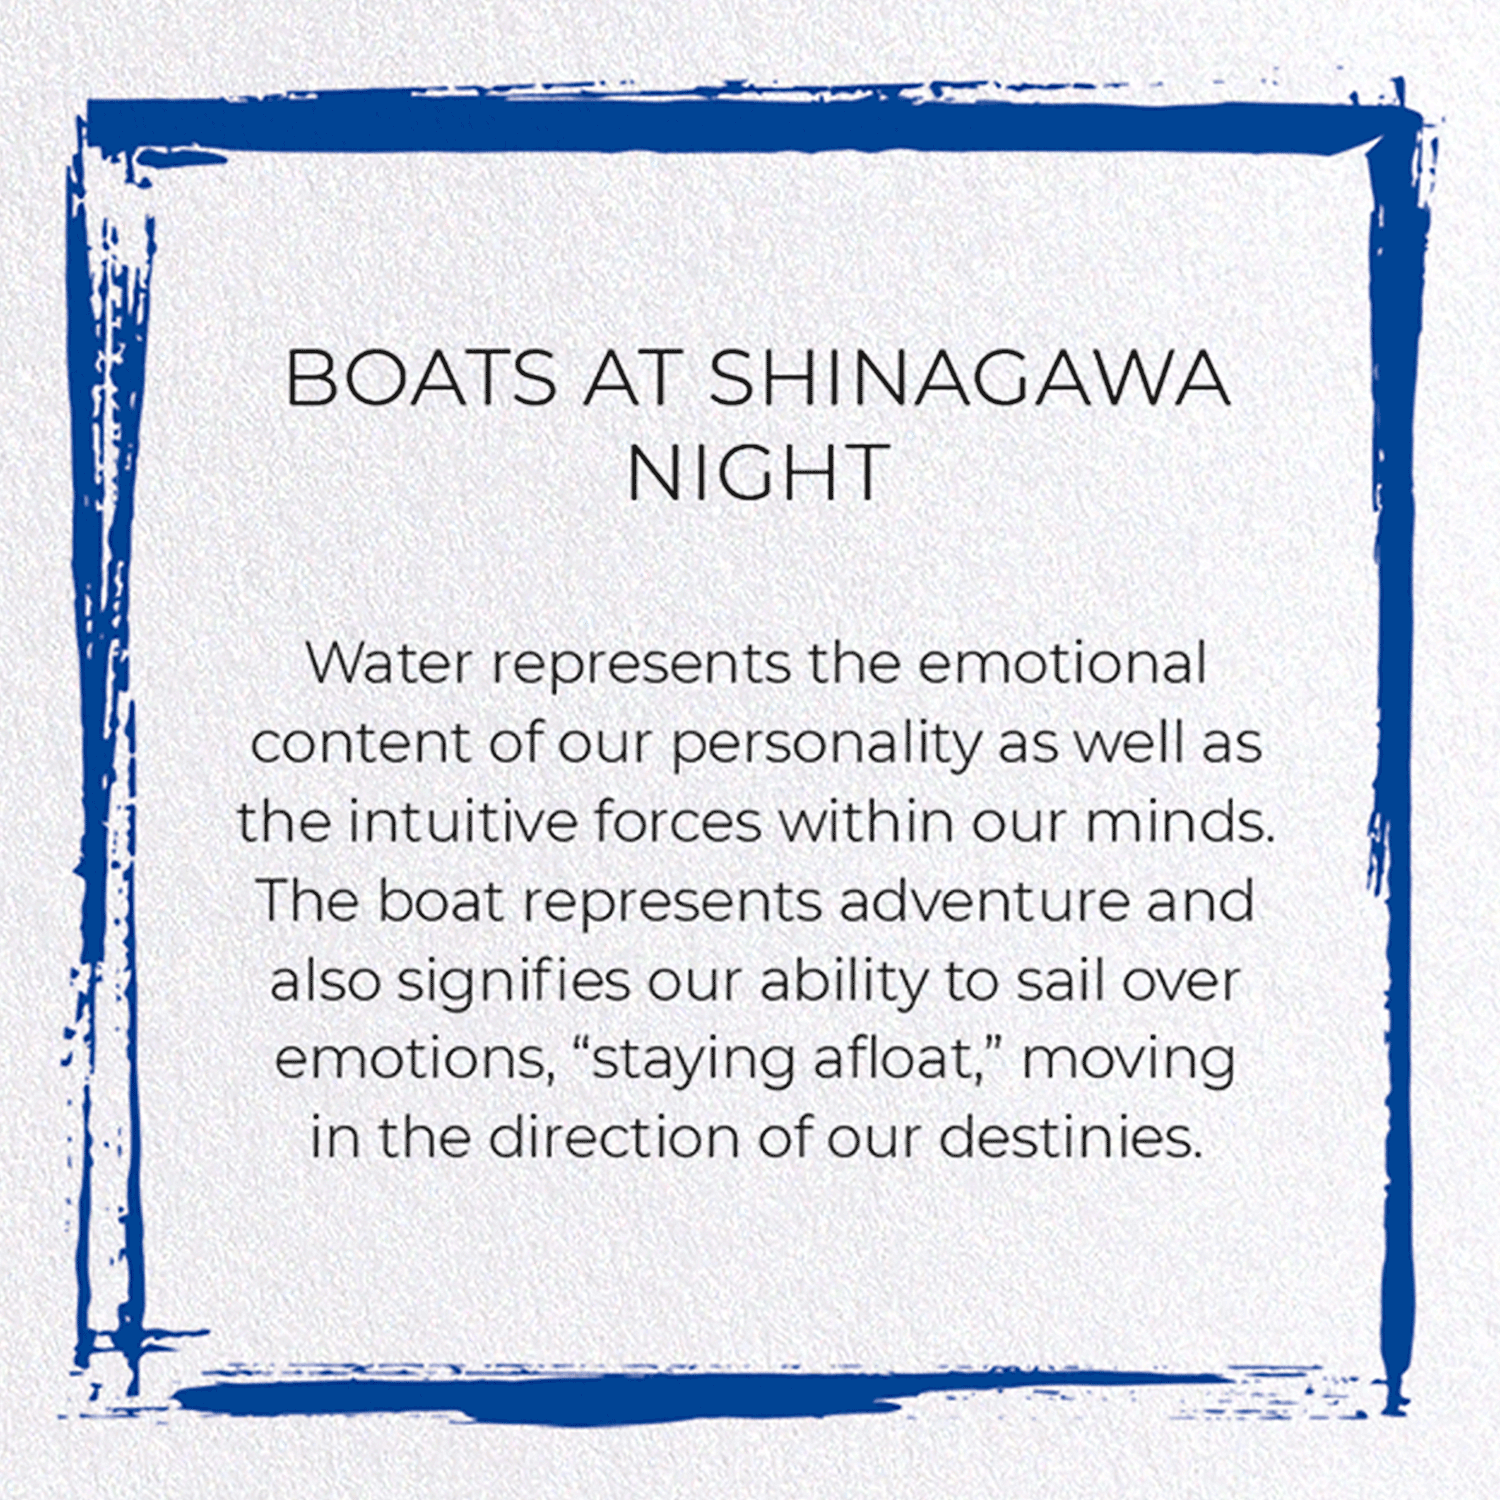 BOATS AT SHINAGAWA NIGHT